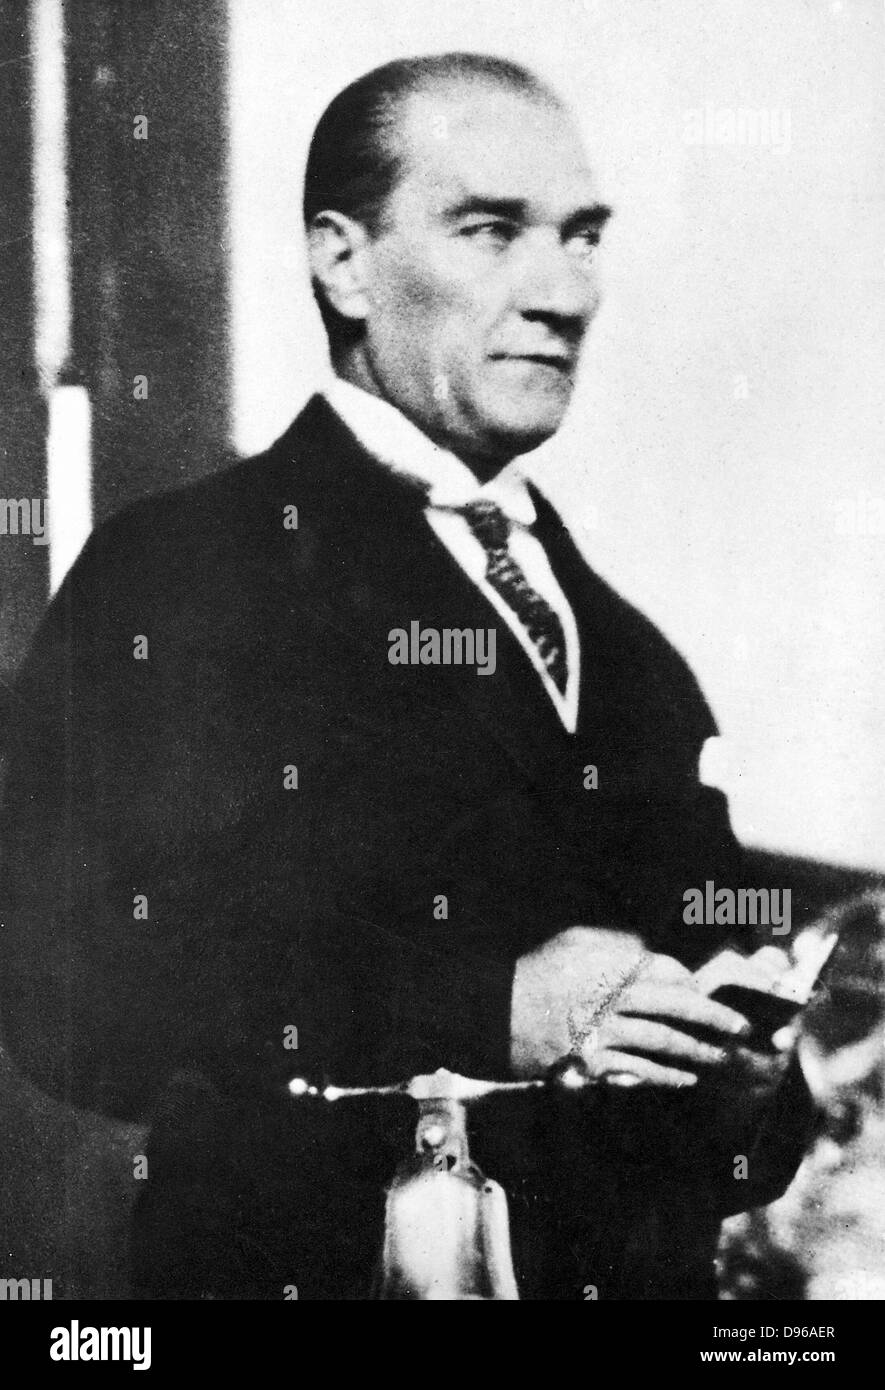 Mustafa Kemel Ataturk (1881-1938) Türkische Staatsmann; Führer der türkischen Nationalbewegung von 1909; für die Modernisierung der Türkei verantwortlich. Präsident 1923-1928. Stockfoto